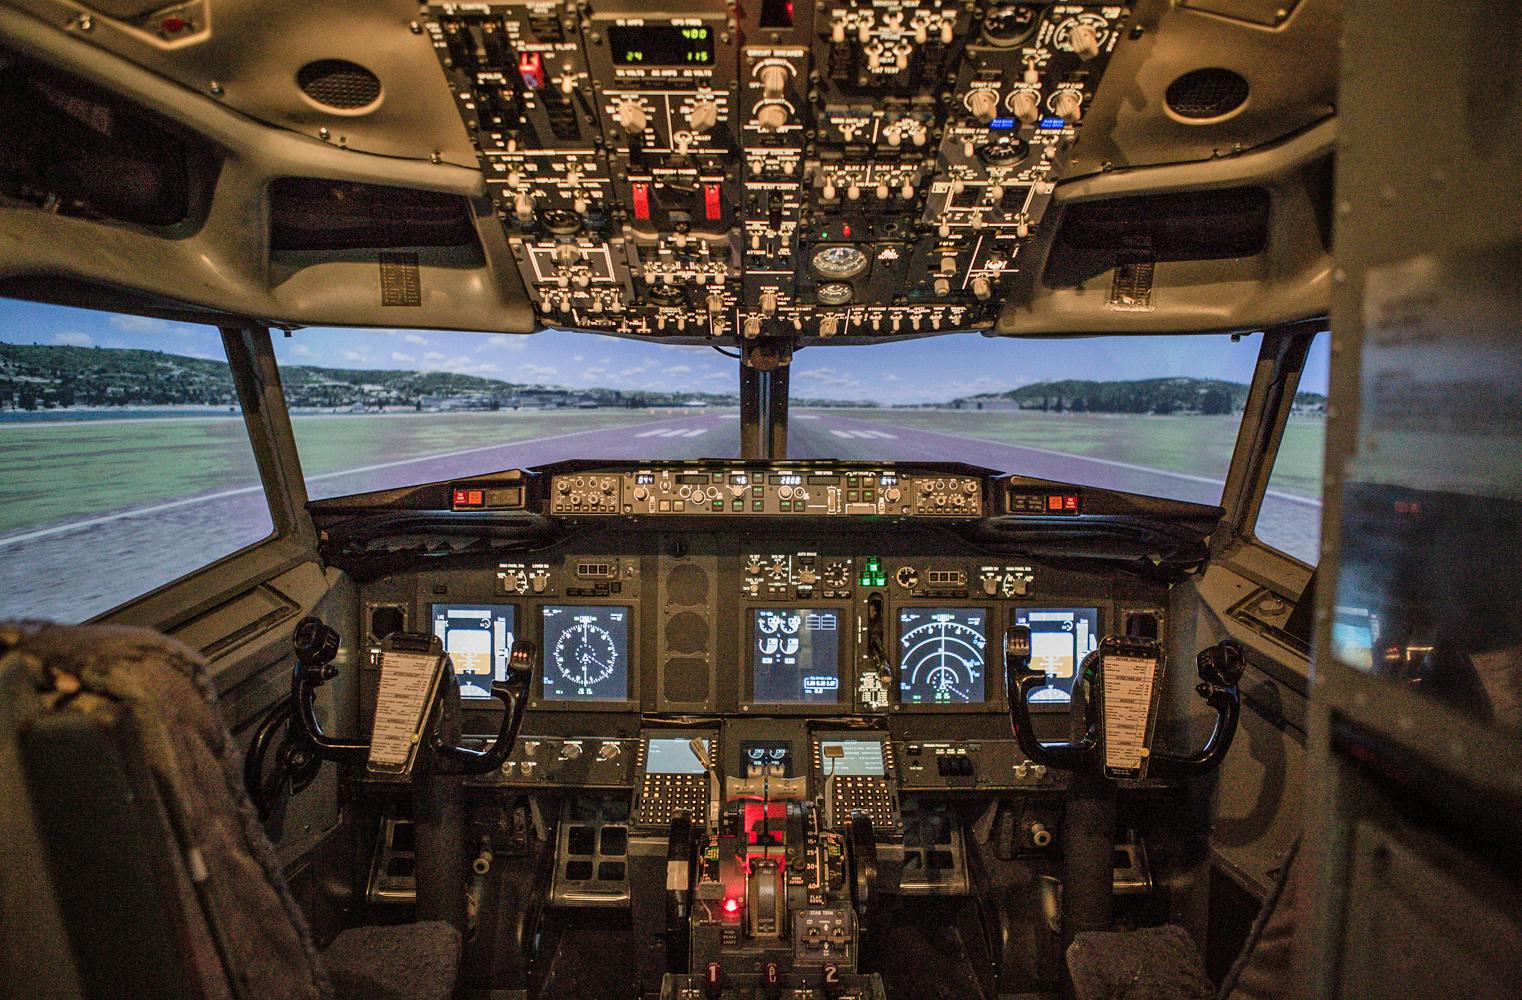 Familienerlebnis Flugsimulator | gemeinsam in der Boeing 737